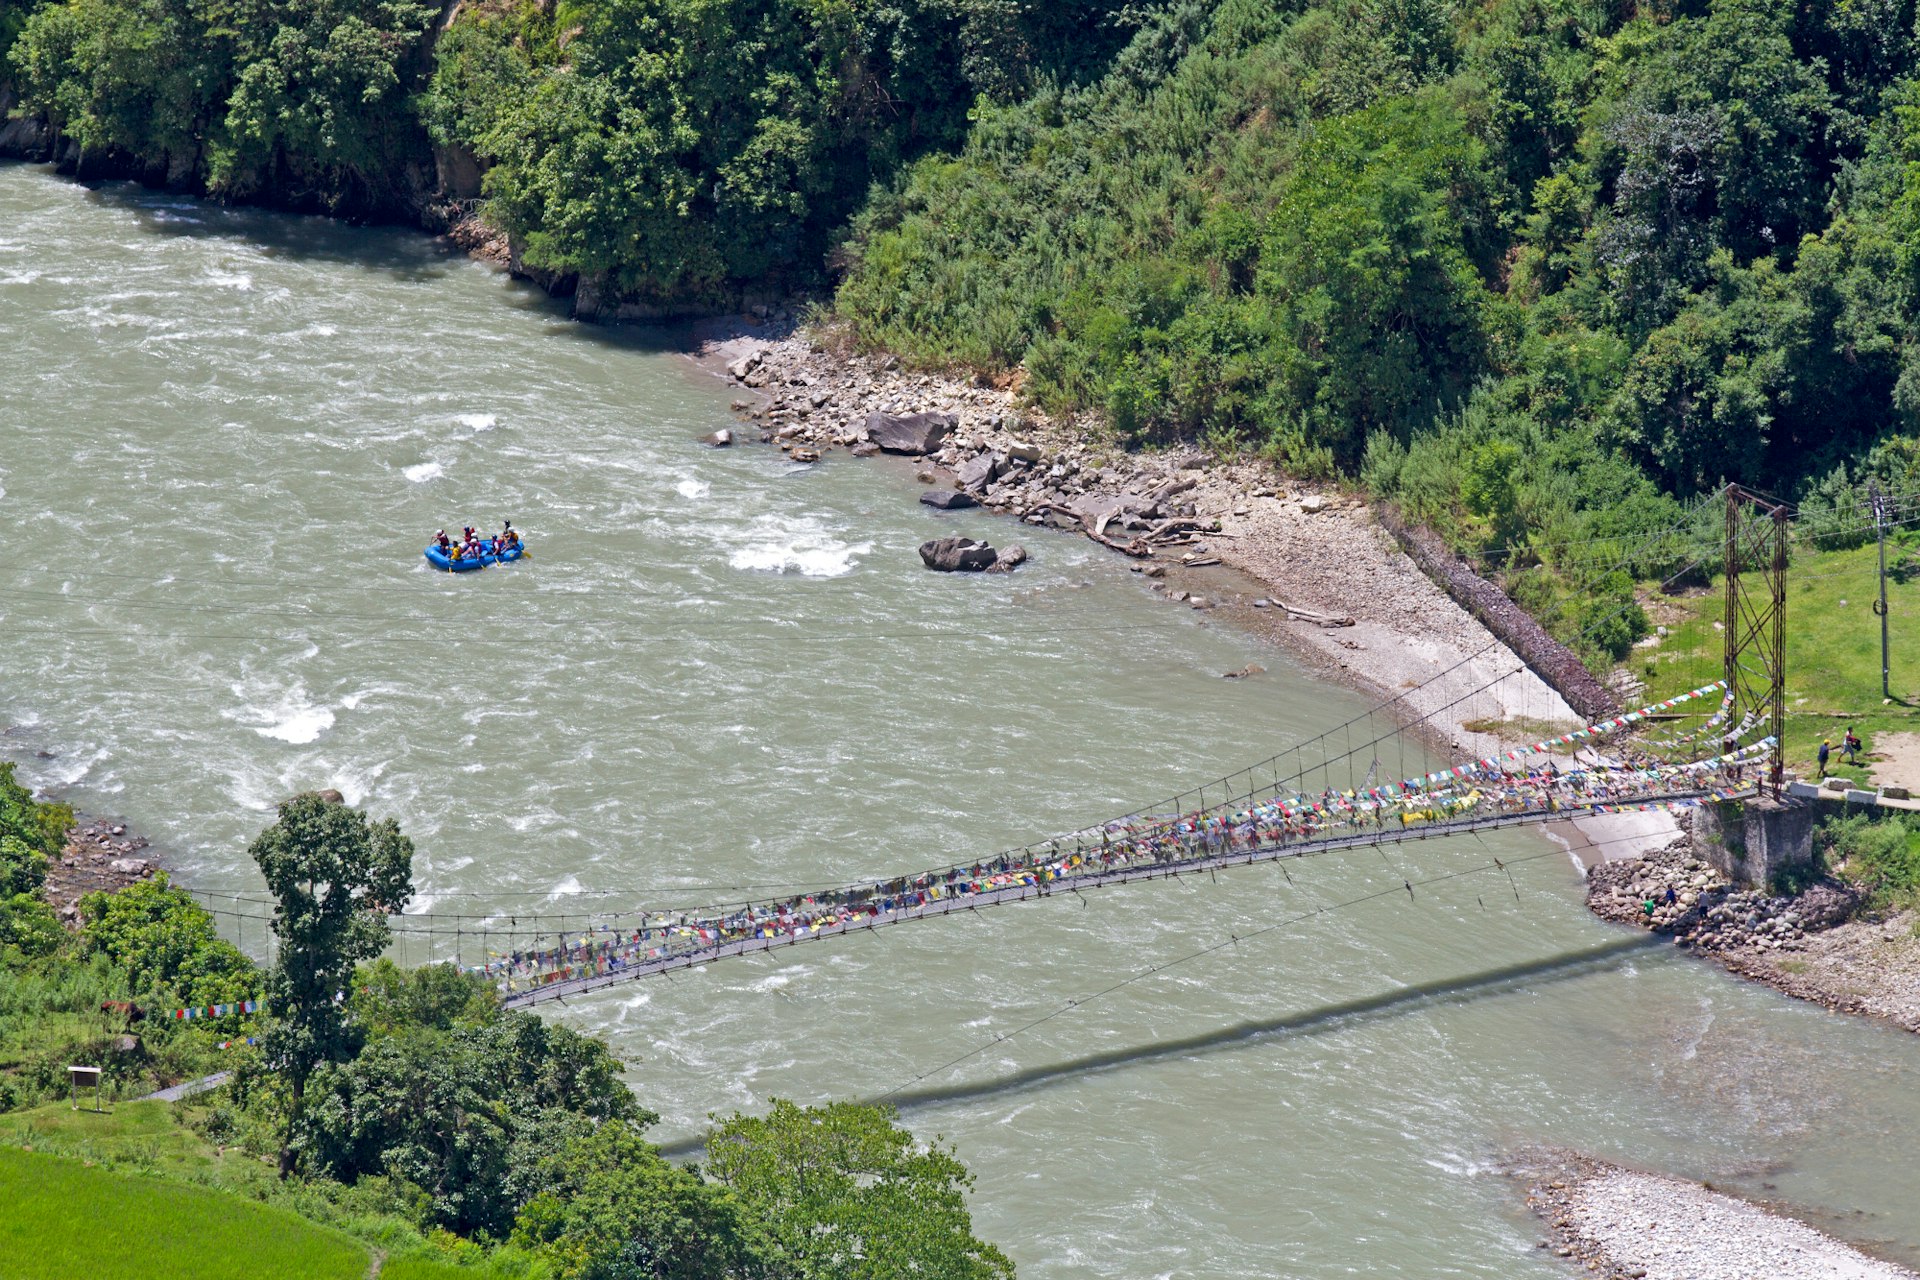 Raft on the Mo Chu River at Punakha